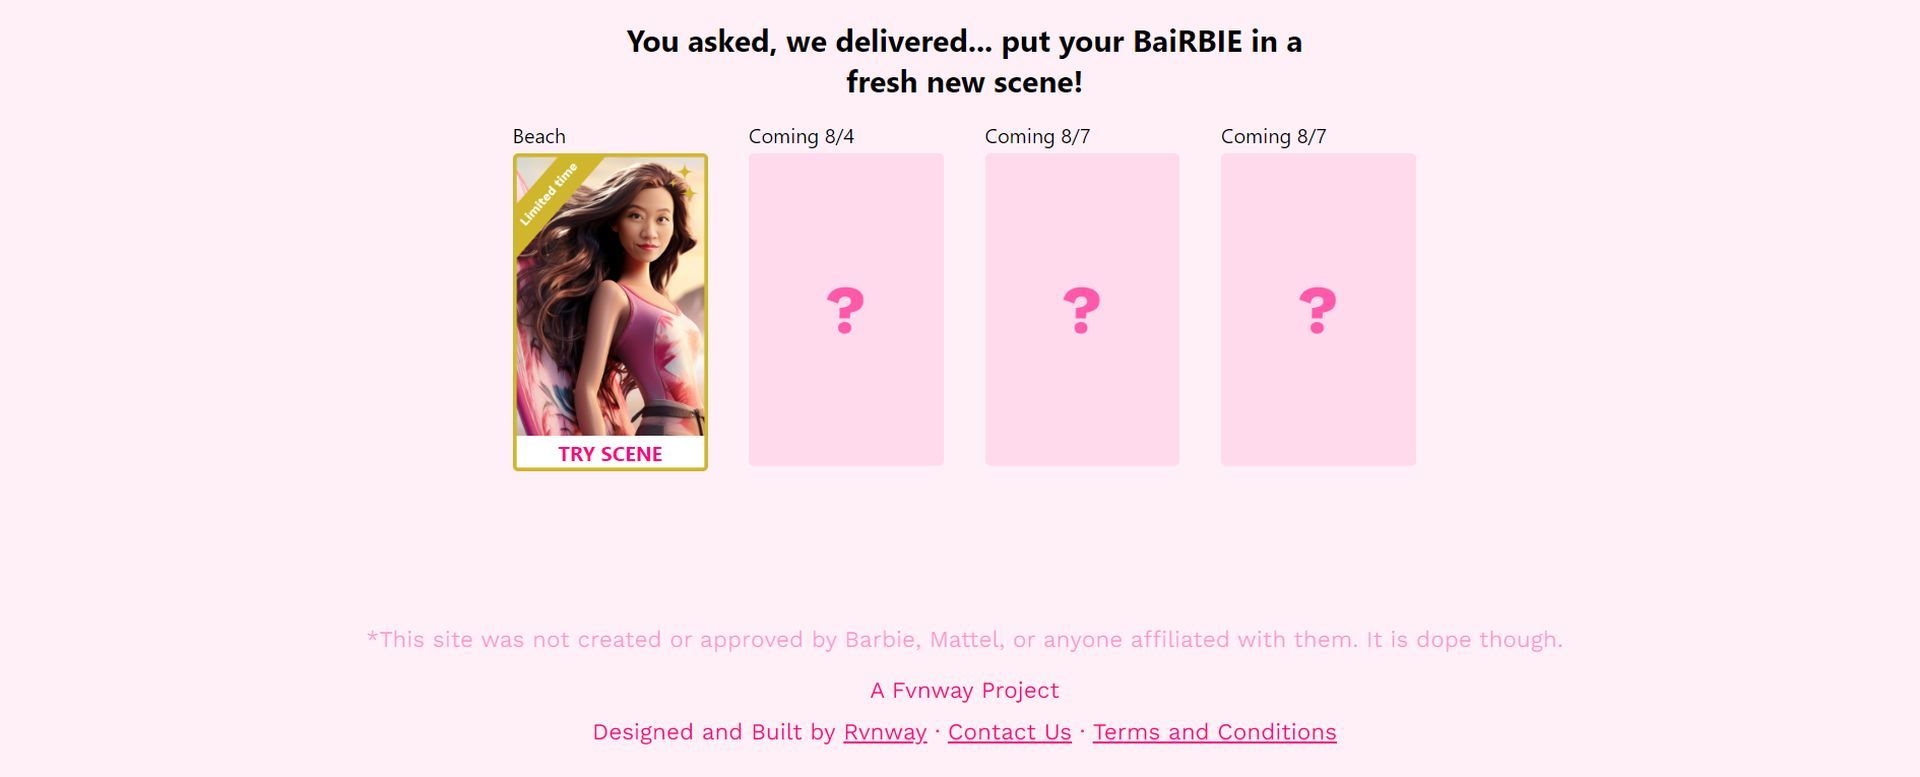 Фильтр Barbie Me AI: испытайте волшебство превращения в Барби (Изображение предоставлено)